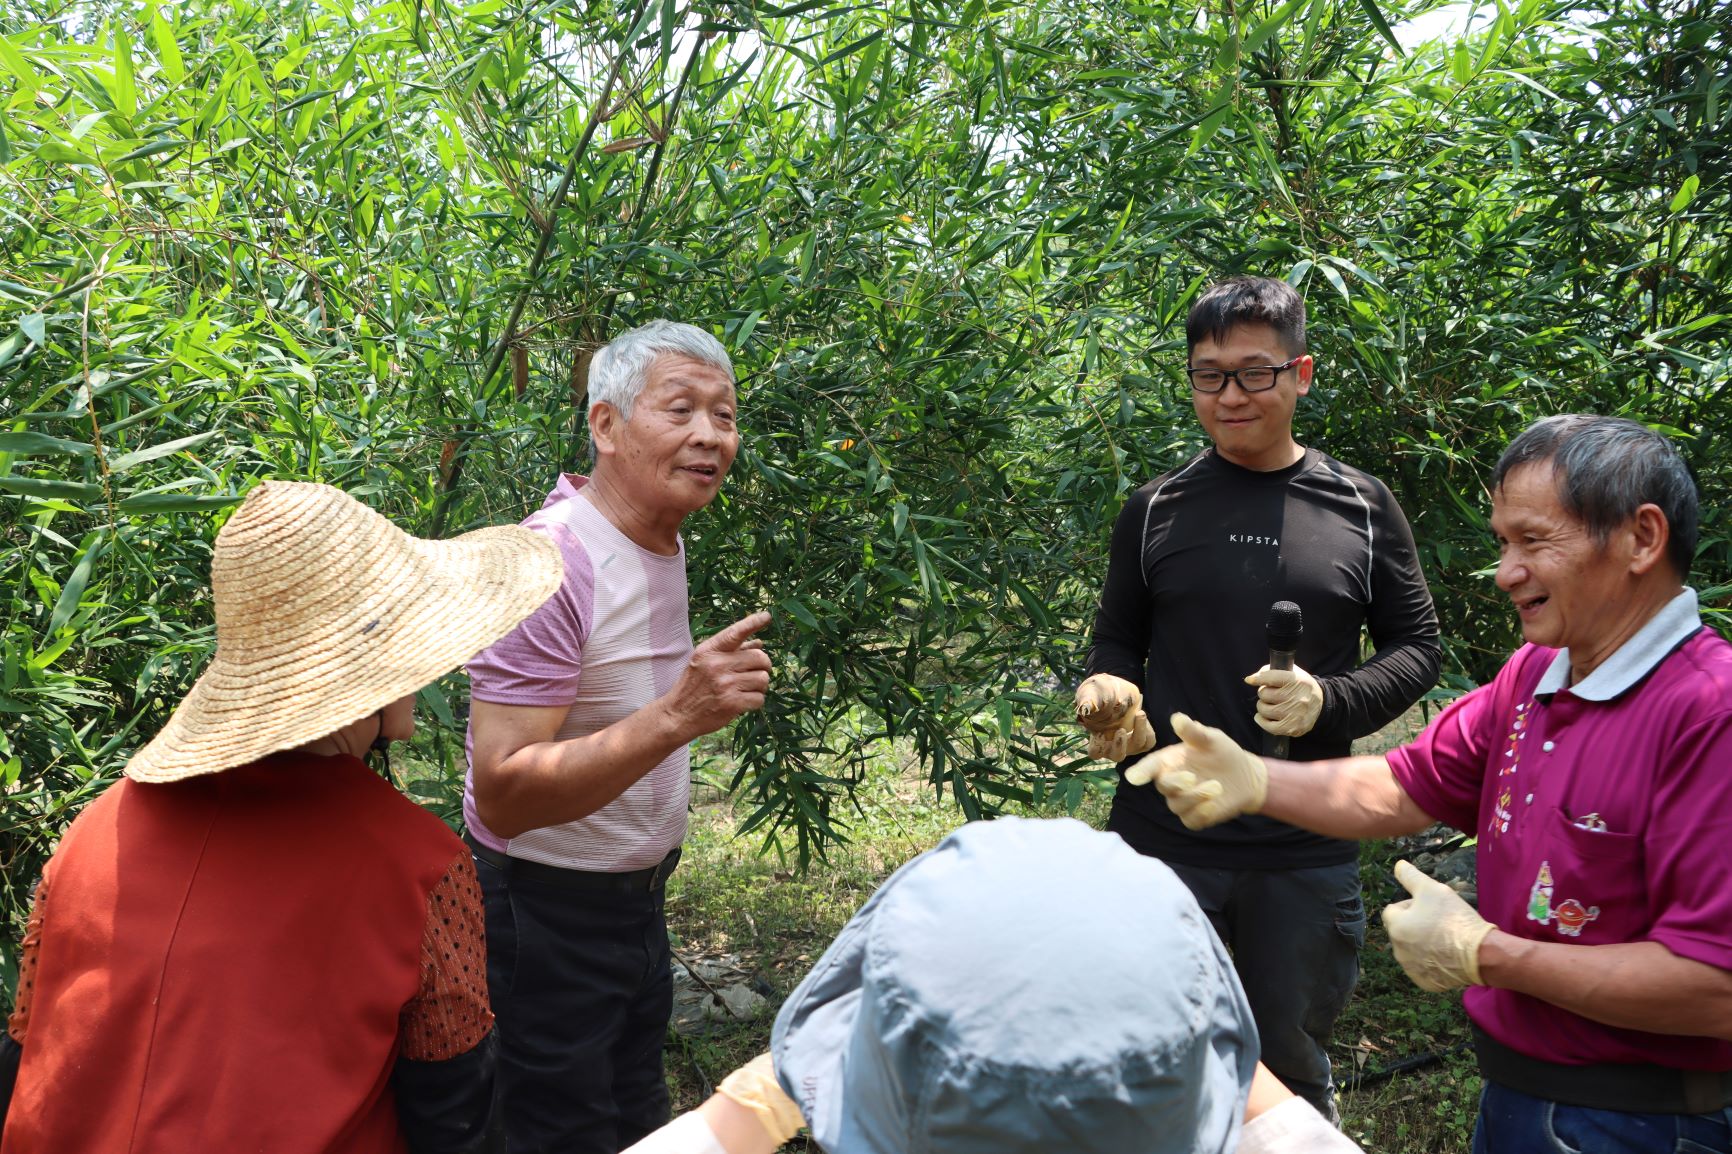 張國禎農友分享噴節水灌溉於竹筍栽培之應用心得